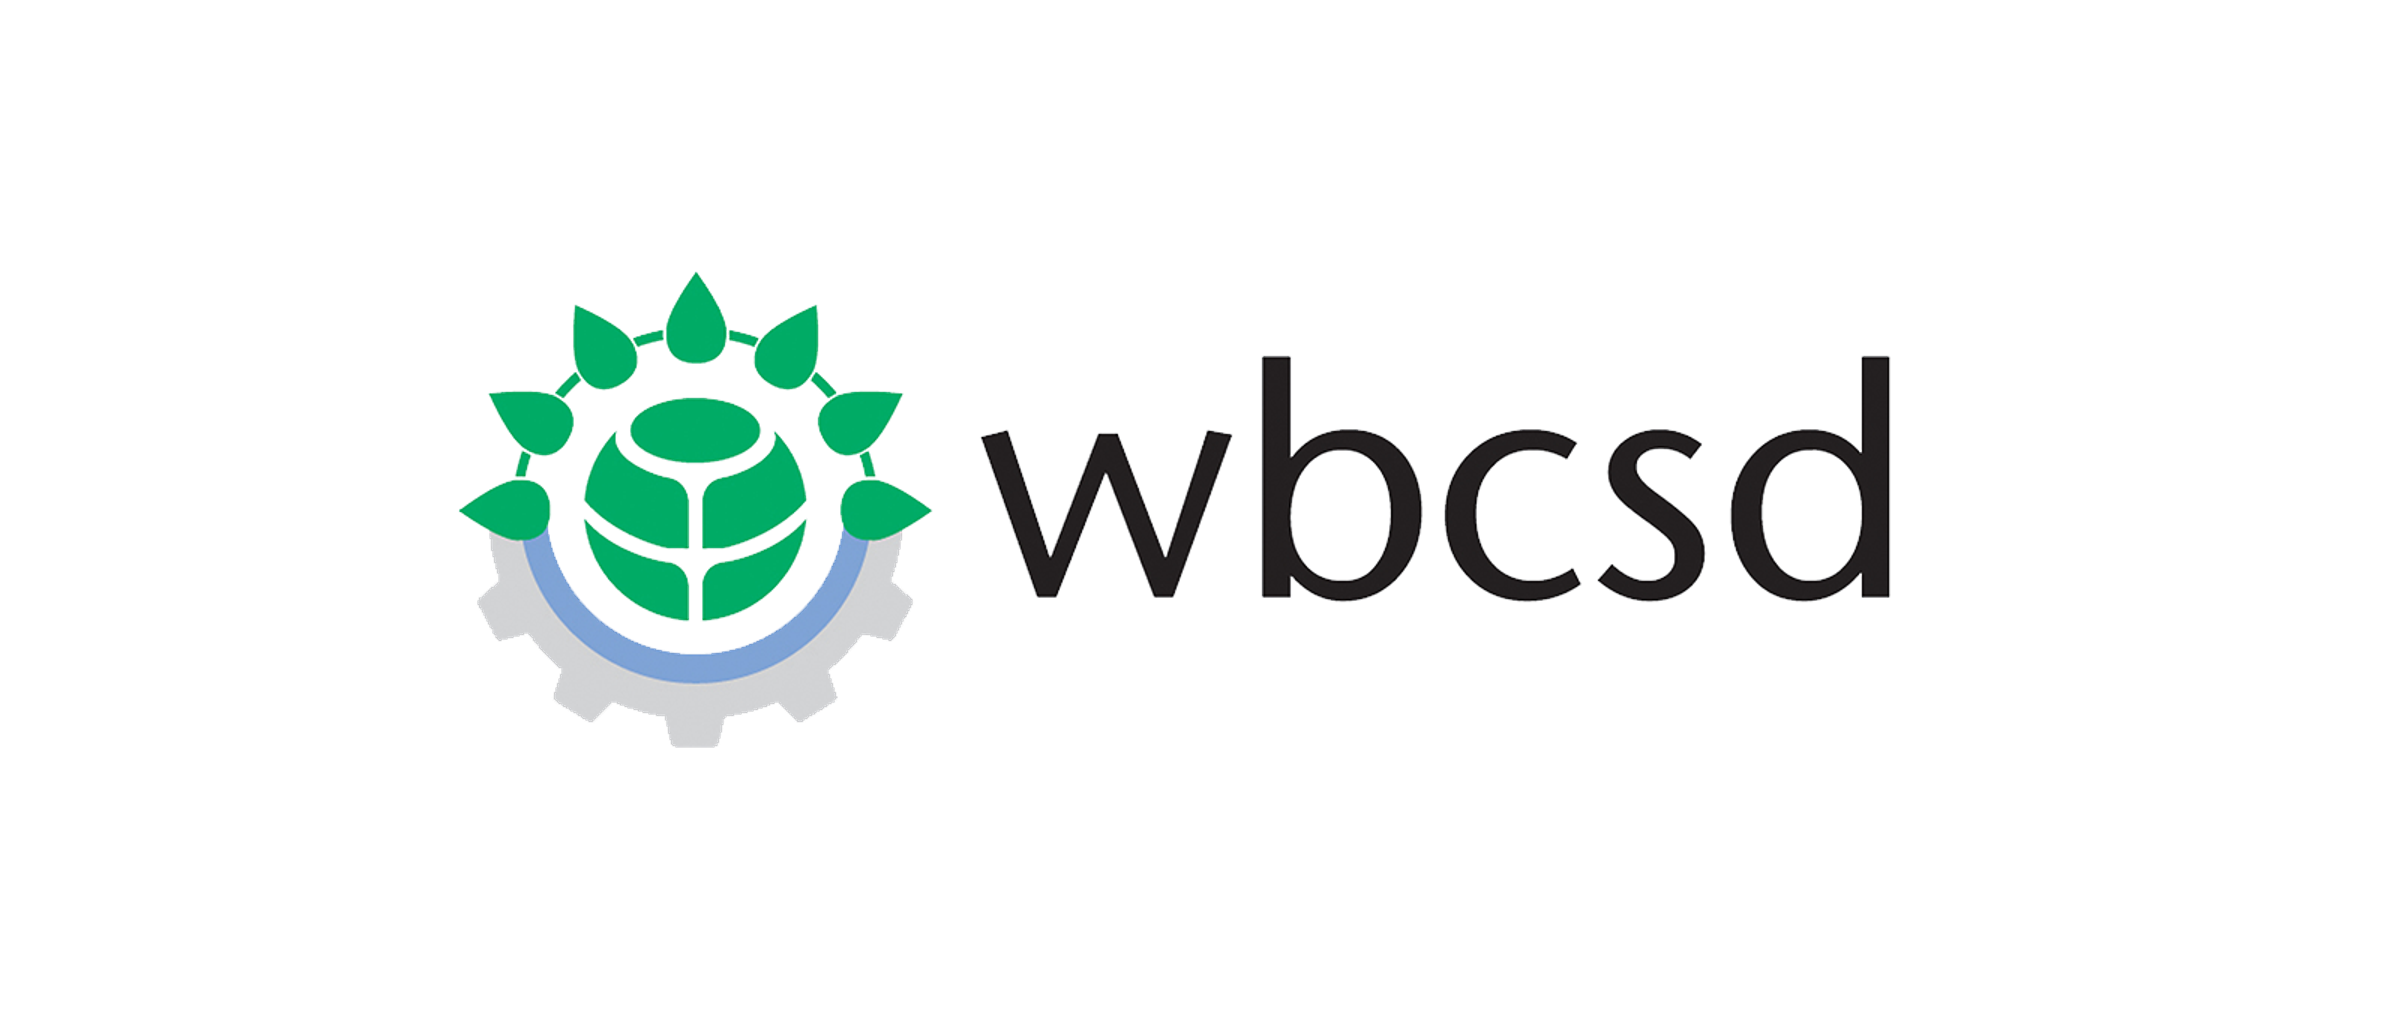 wbcsd logo